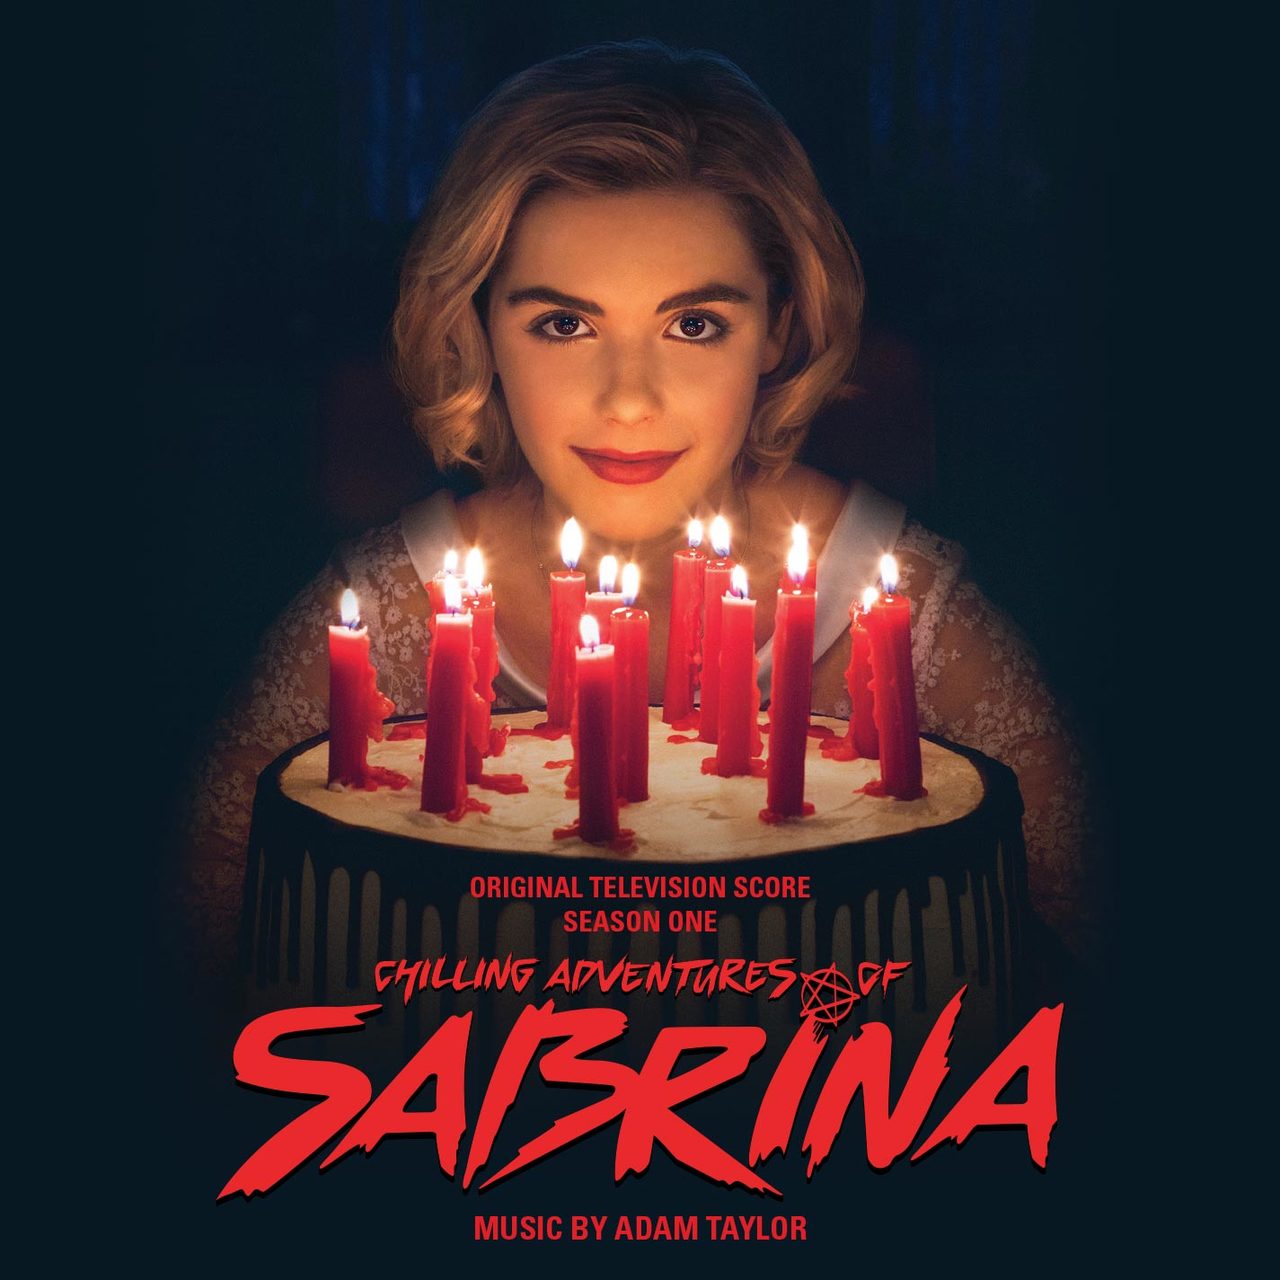 Les Nouvelles aventures de Sabrina Saison 1 (Chilling Adventures of Sabrina)